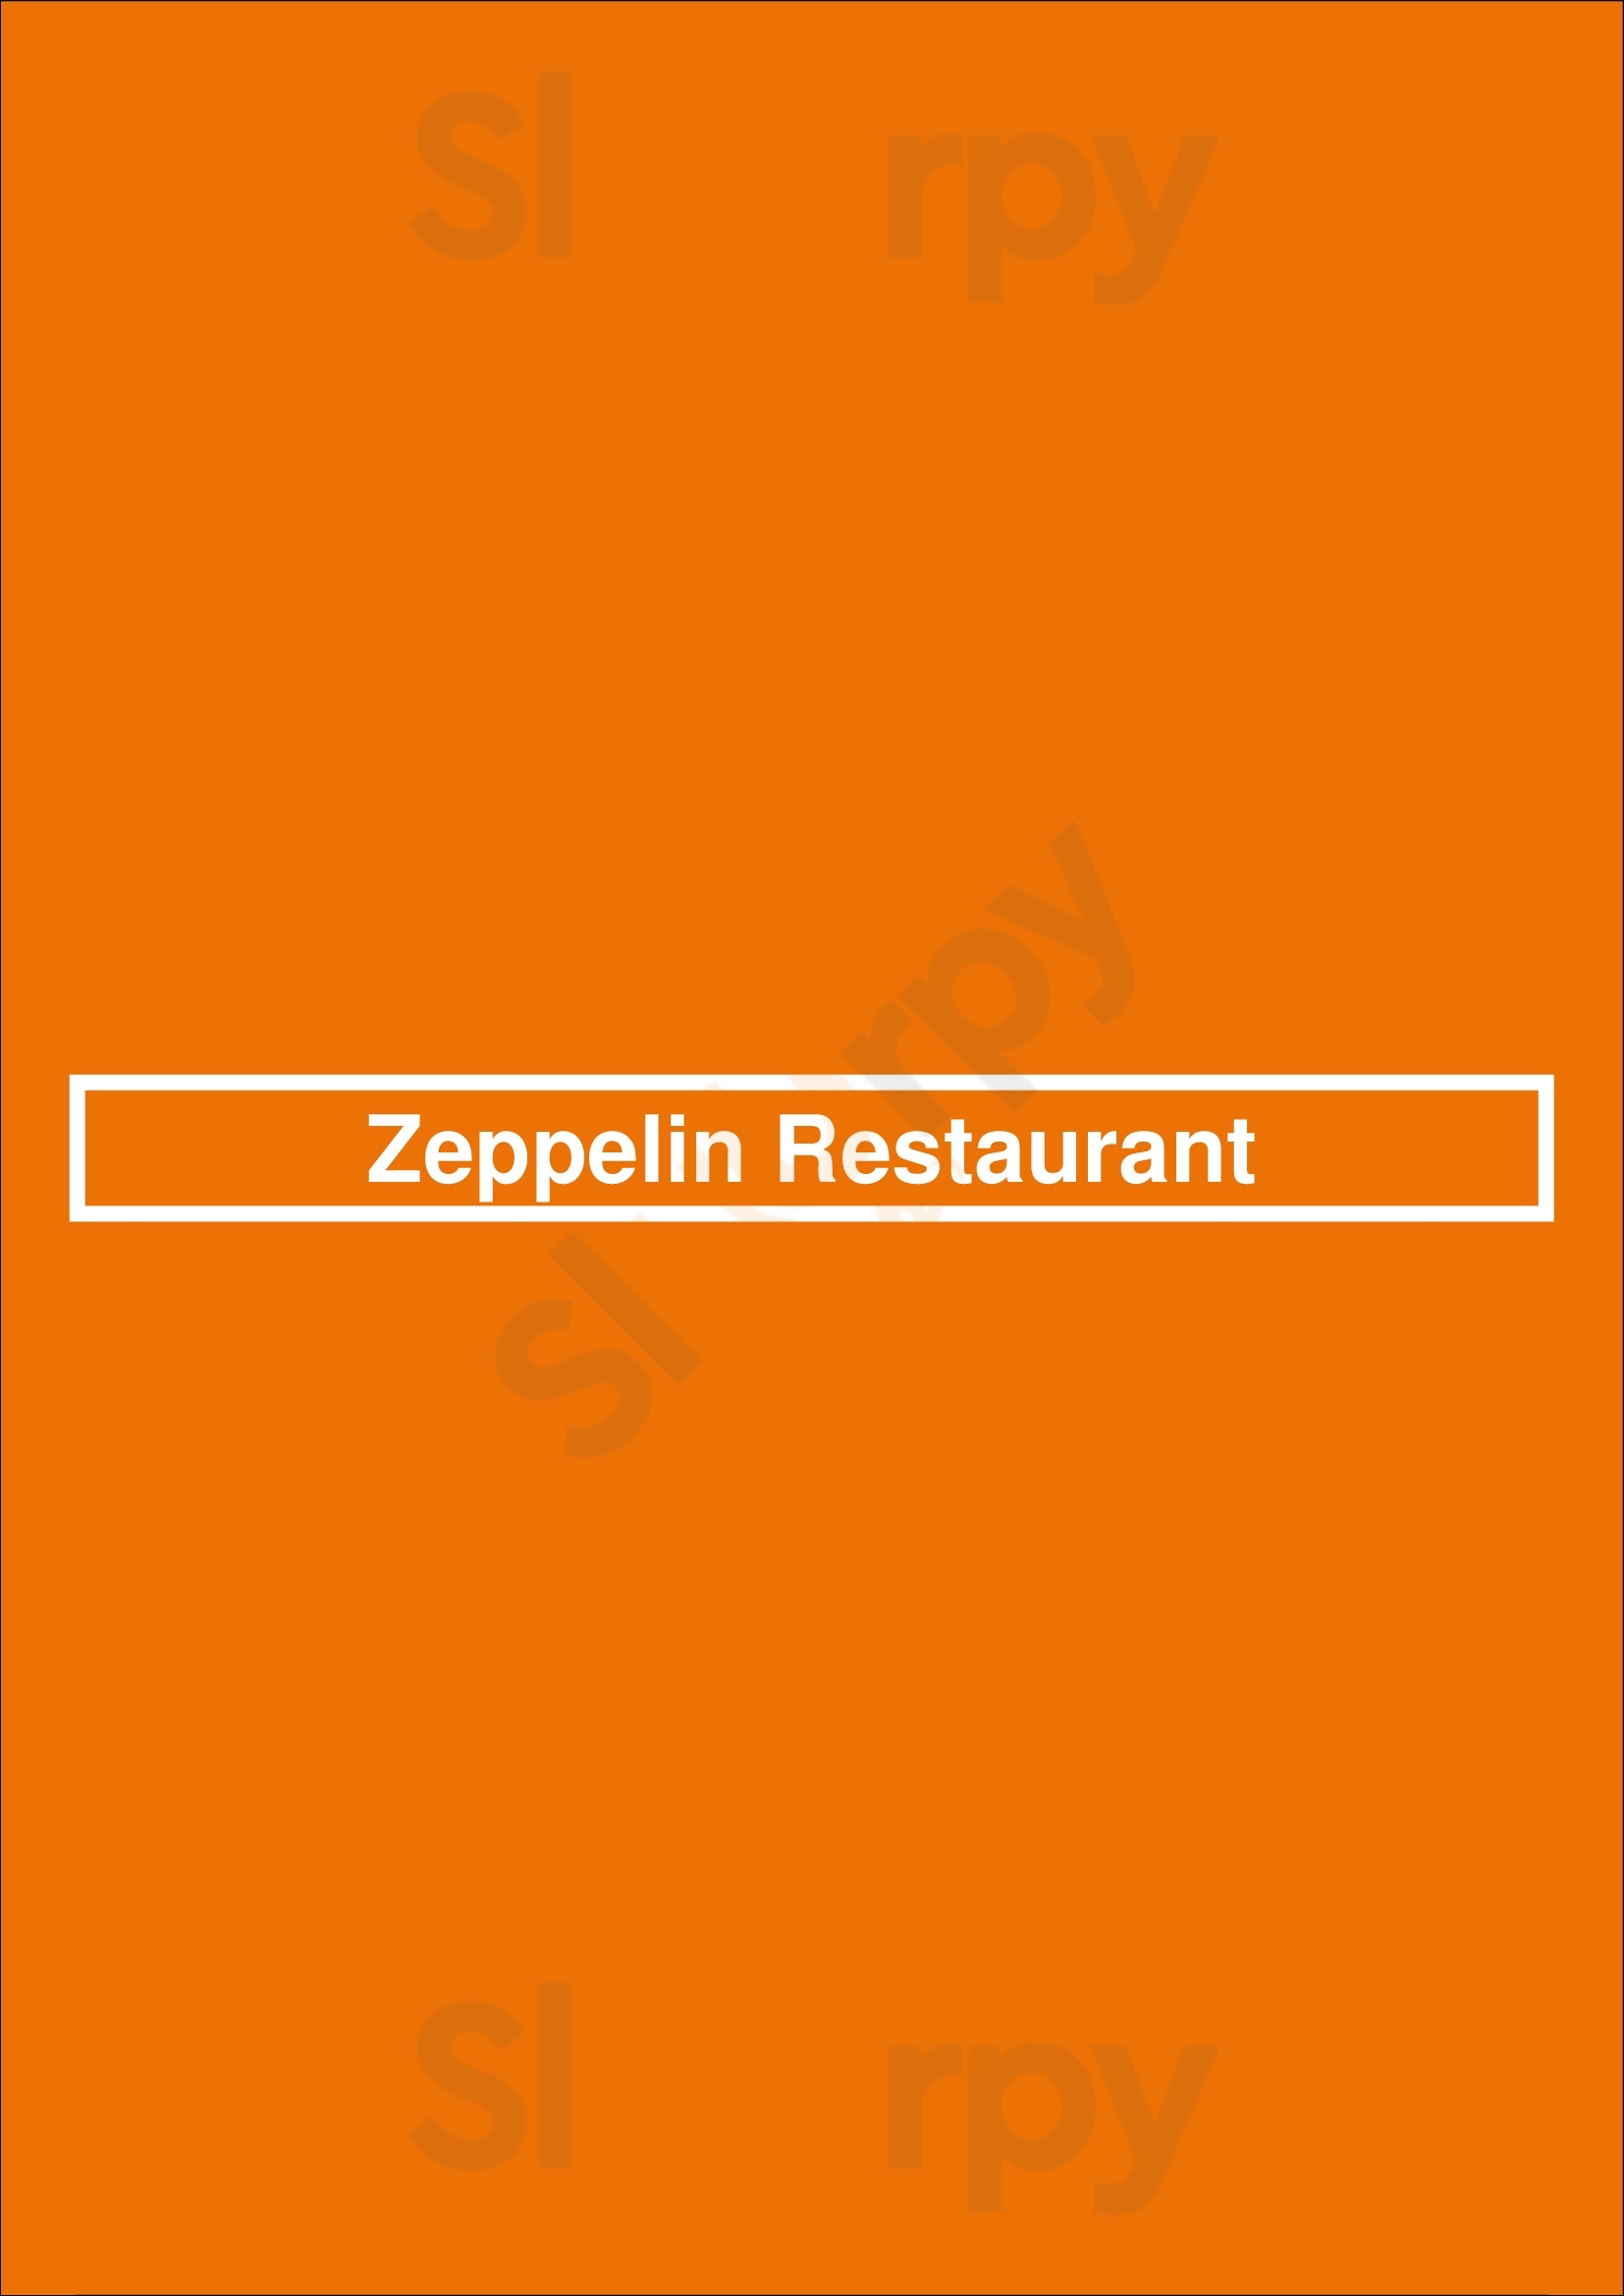 Zeppelin Restaurant Schwerin Menu - 1